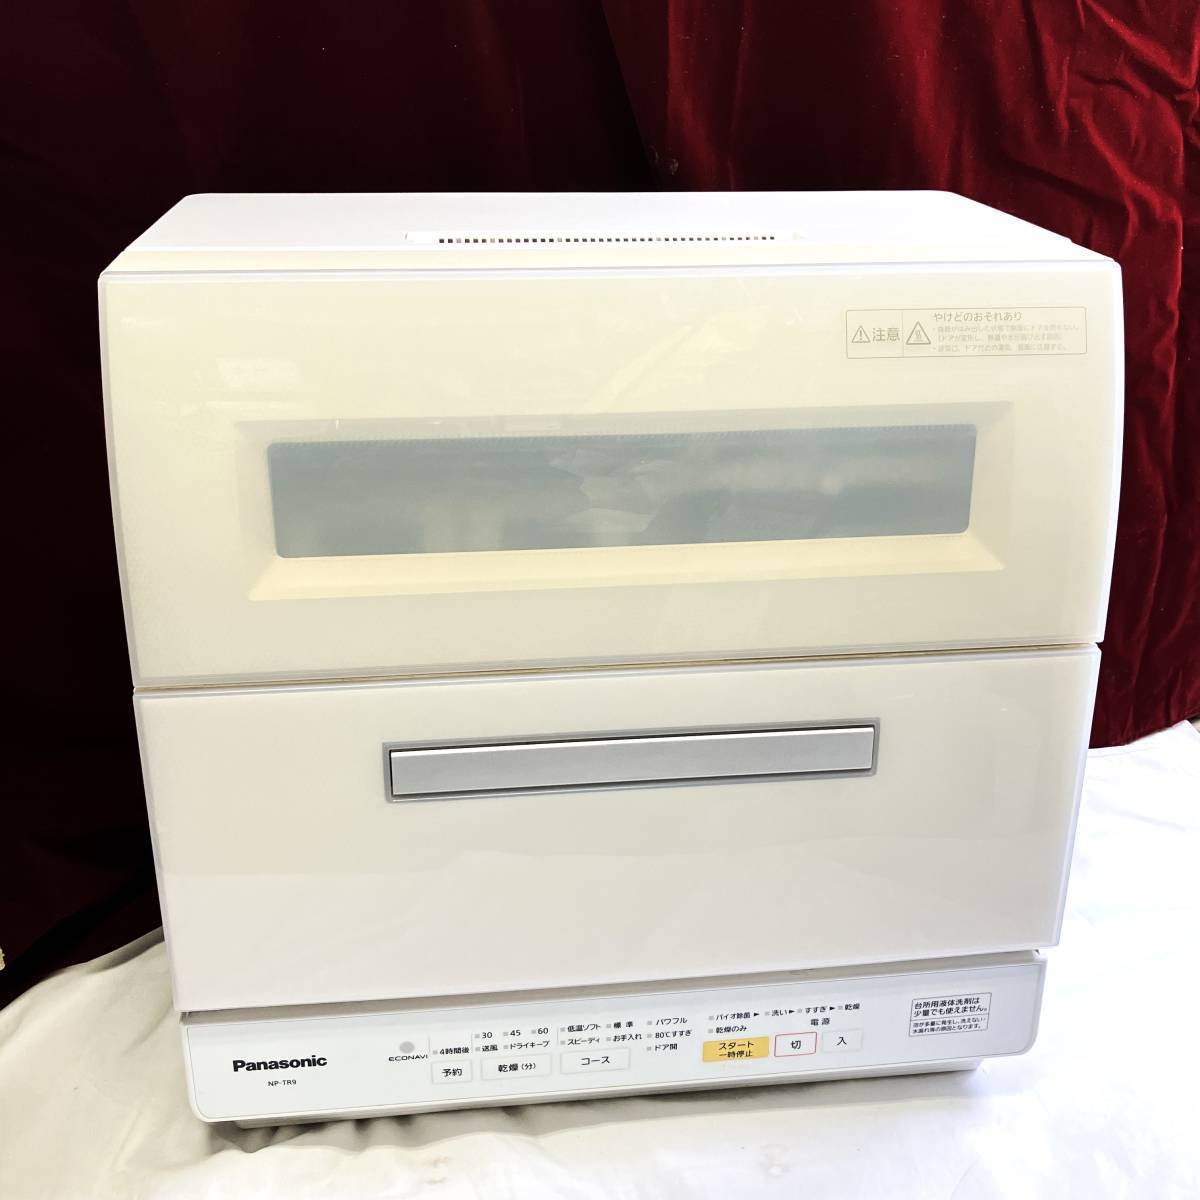 （志木）Panasonic(パナソニック) 食器洗い乾燥機 食洗機 NP-TR9 ホワイト 約6人分 45点 エコナビ搭載 バイオパワー除菌